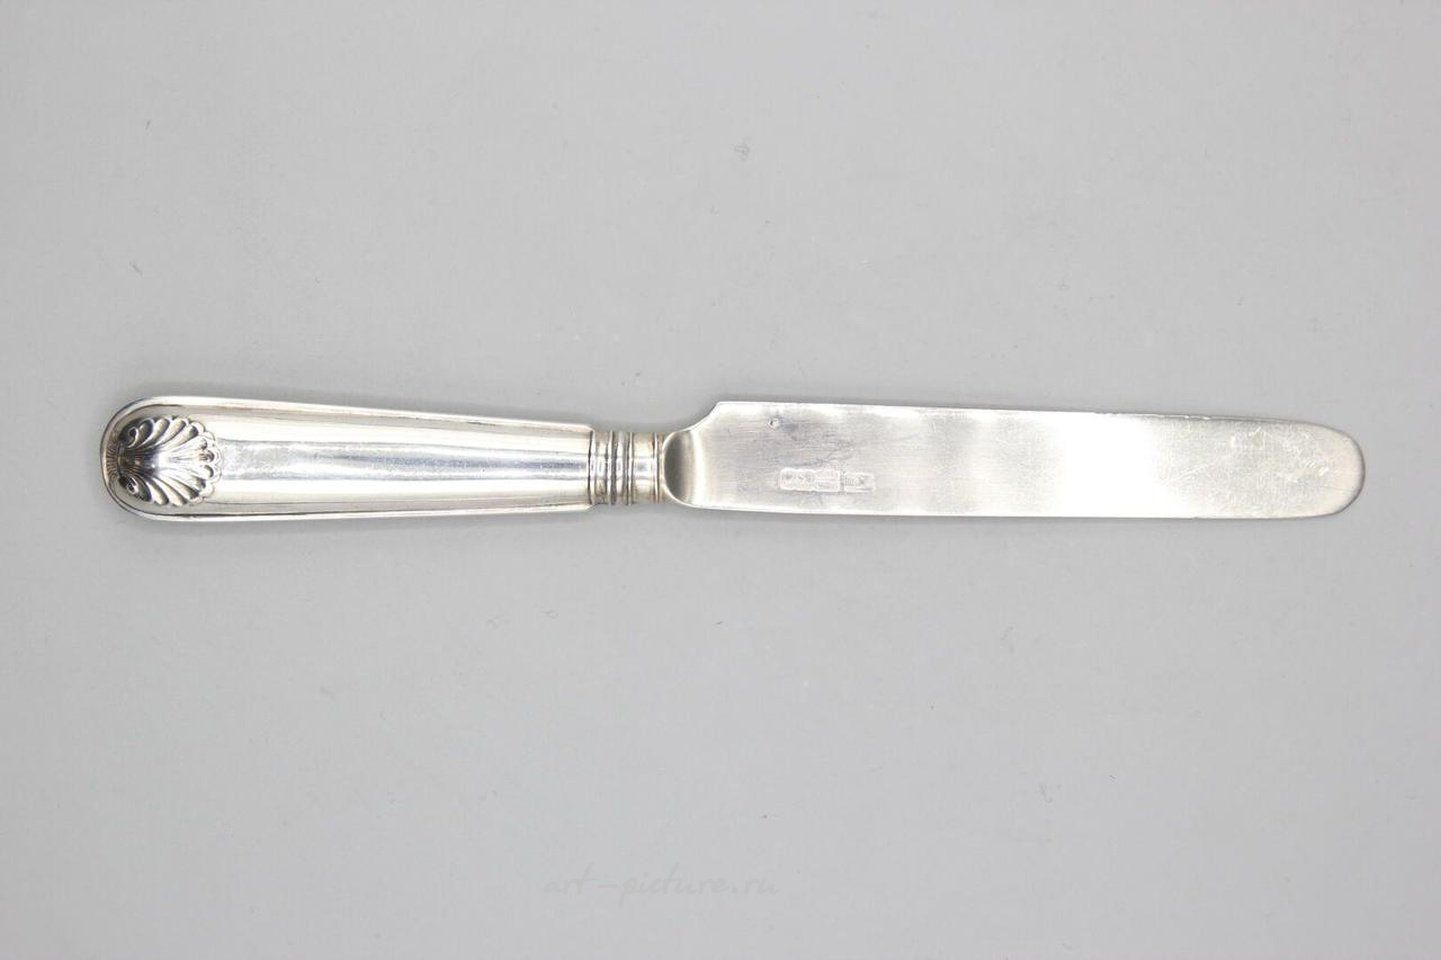 Русское серебро , Русский сервис состоит из 11 больших серебряных ножей